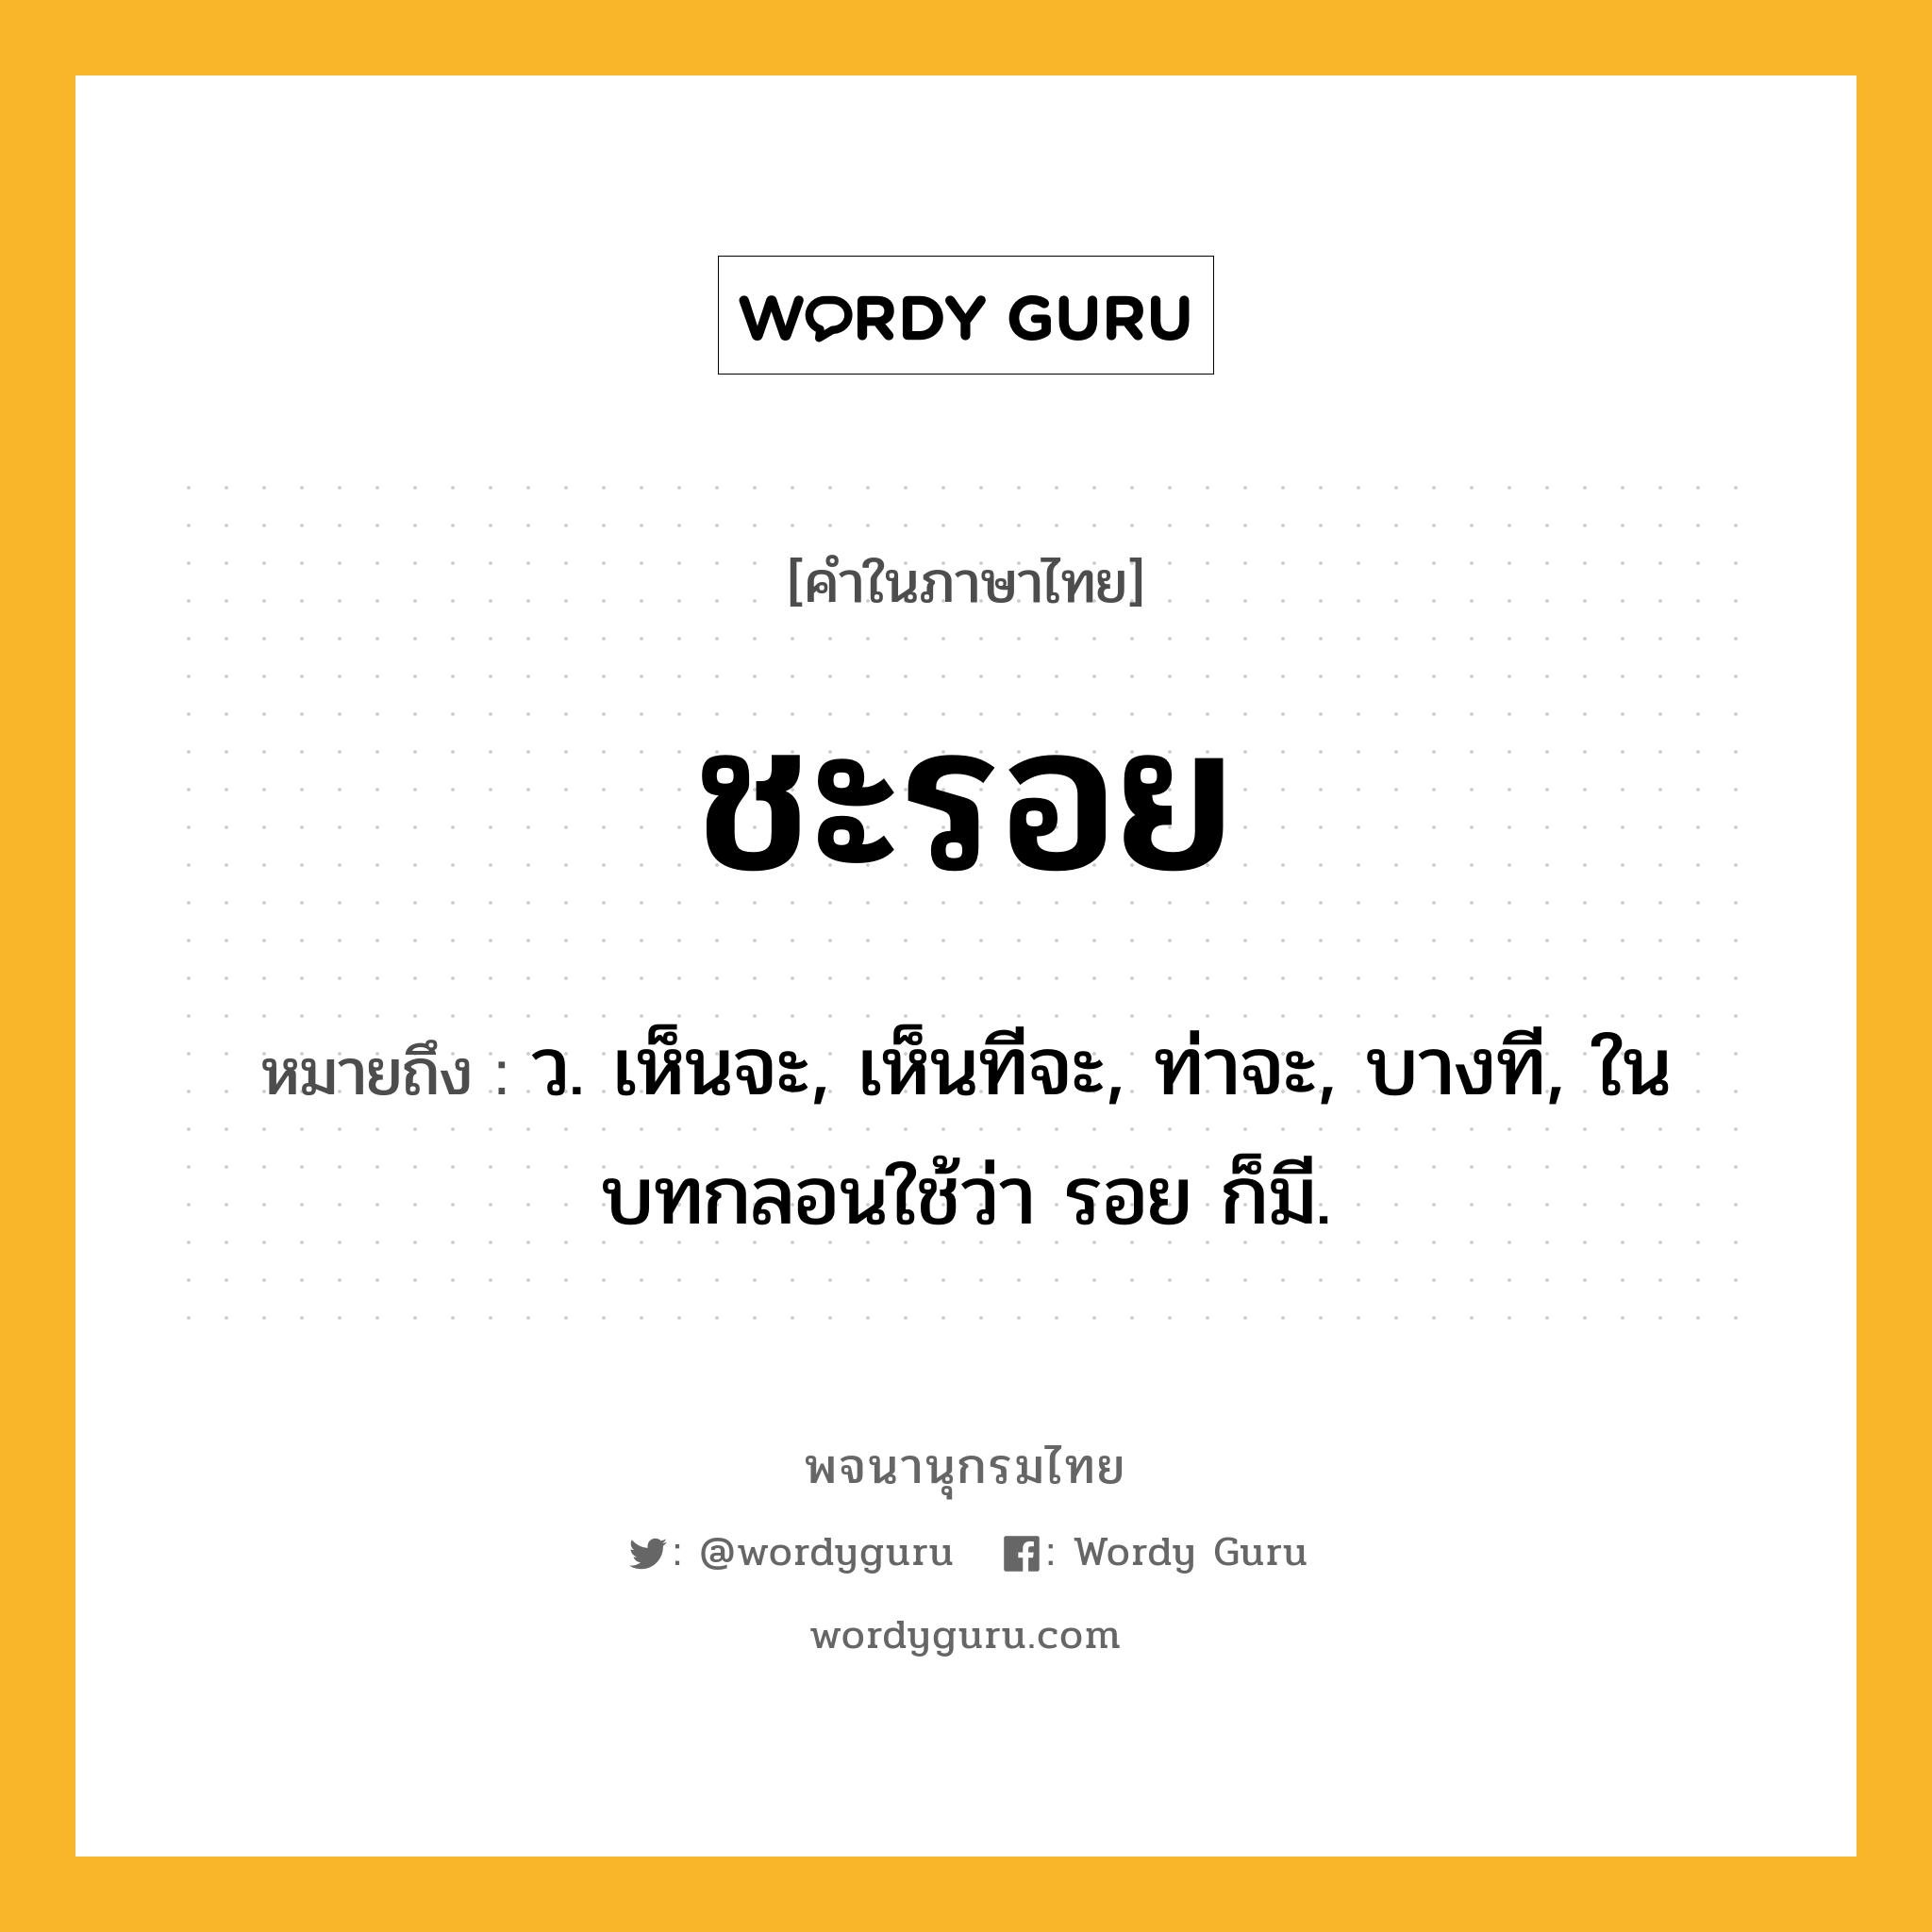 ชะรอย ความหมาย หมายถึงอะไร?, คำในภาษาไทย ชะรอย หมายถึง ว. เห็นจะ, เห็นทีจะ, ท่าจะ, บางที, ในบทกลอนใช้ว่า รอย ก็มี.